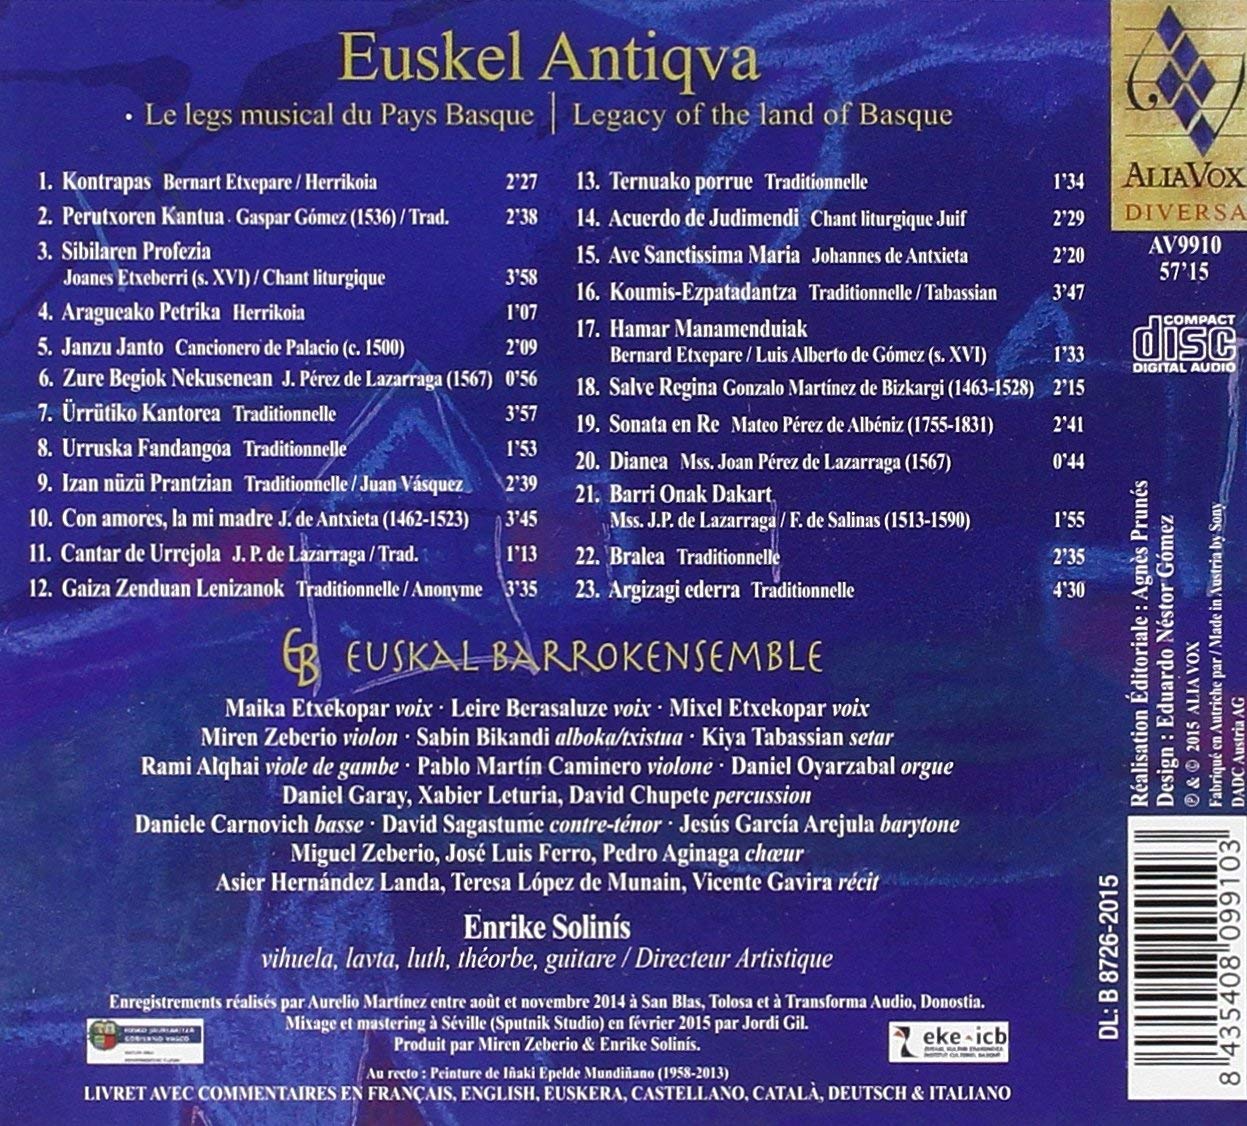 Euskel Antiqva, dziedzictwo muzyczne Kraju Basków - slide-1